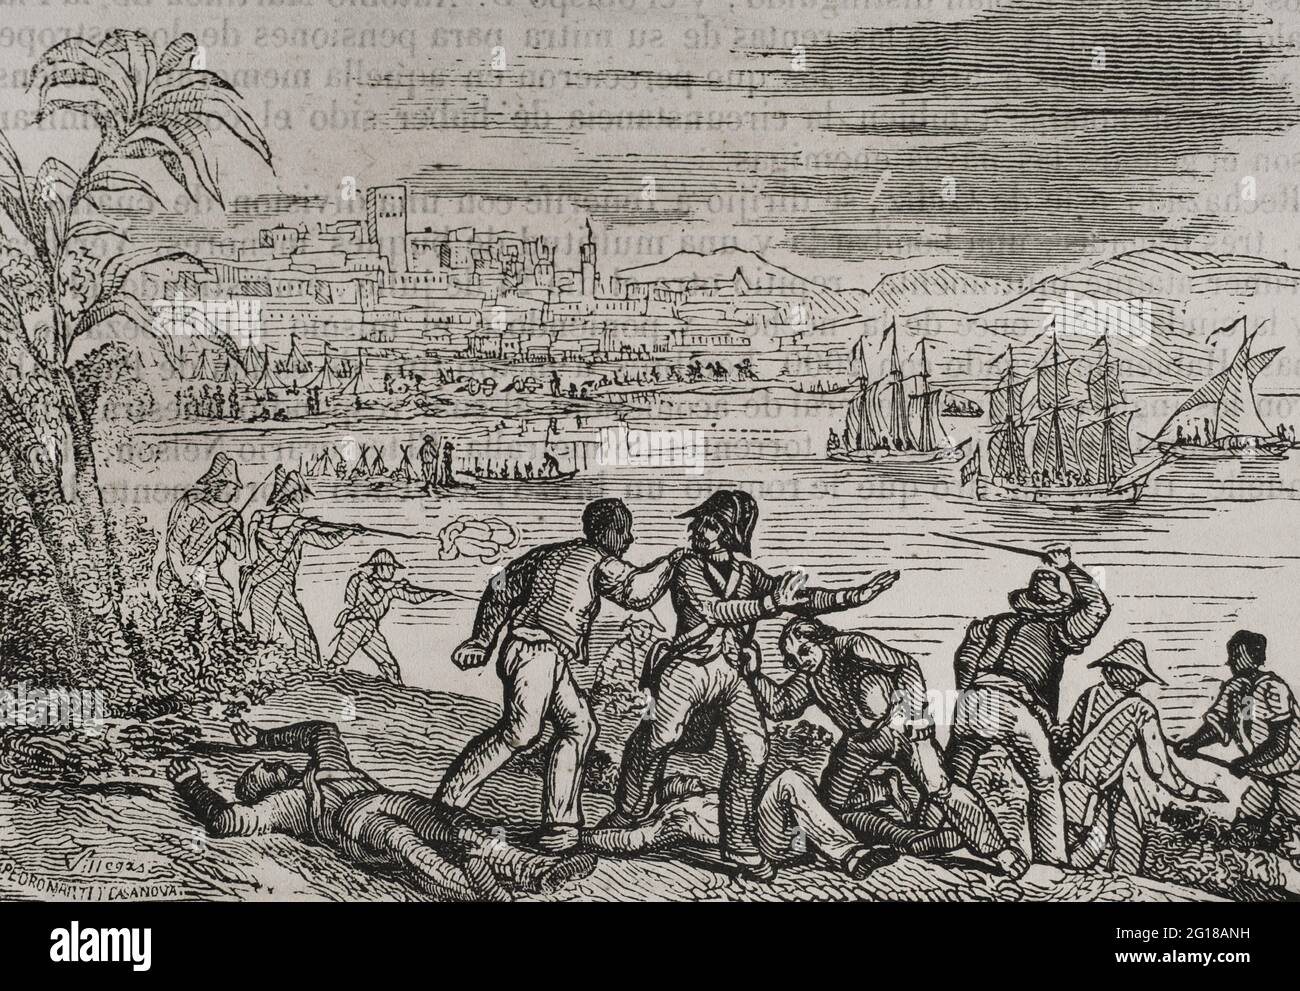 Guerre anglo-espagnole (1796-1802). Attaque sur Porto Rico (1797). Par le Traité de San Ildefonso en 1796, l'Espagne est devenue un ennemi de la Grande-Bretagne. Les Britanniques ont envoyé une flotte dans les Caraïbes pour envahir les îles de Trinidad et de Porto Rico, commandée par l'amiral Henry Harvey. Ils ont réussi la reddition de Trinité mais ont été battus à Porto Rico. Le Lieutenant-général Sir Ralph Abercromby a envahi l'île de Porto Rico défendue par les forces espagnoles dirigées par Ramón de Castro et la milice de la capitale commandée par Rafael Conti. Défaite des Britanniques à Porto Rico pendant la bataille de San Juan Banque D'Images